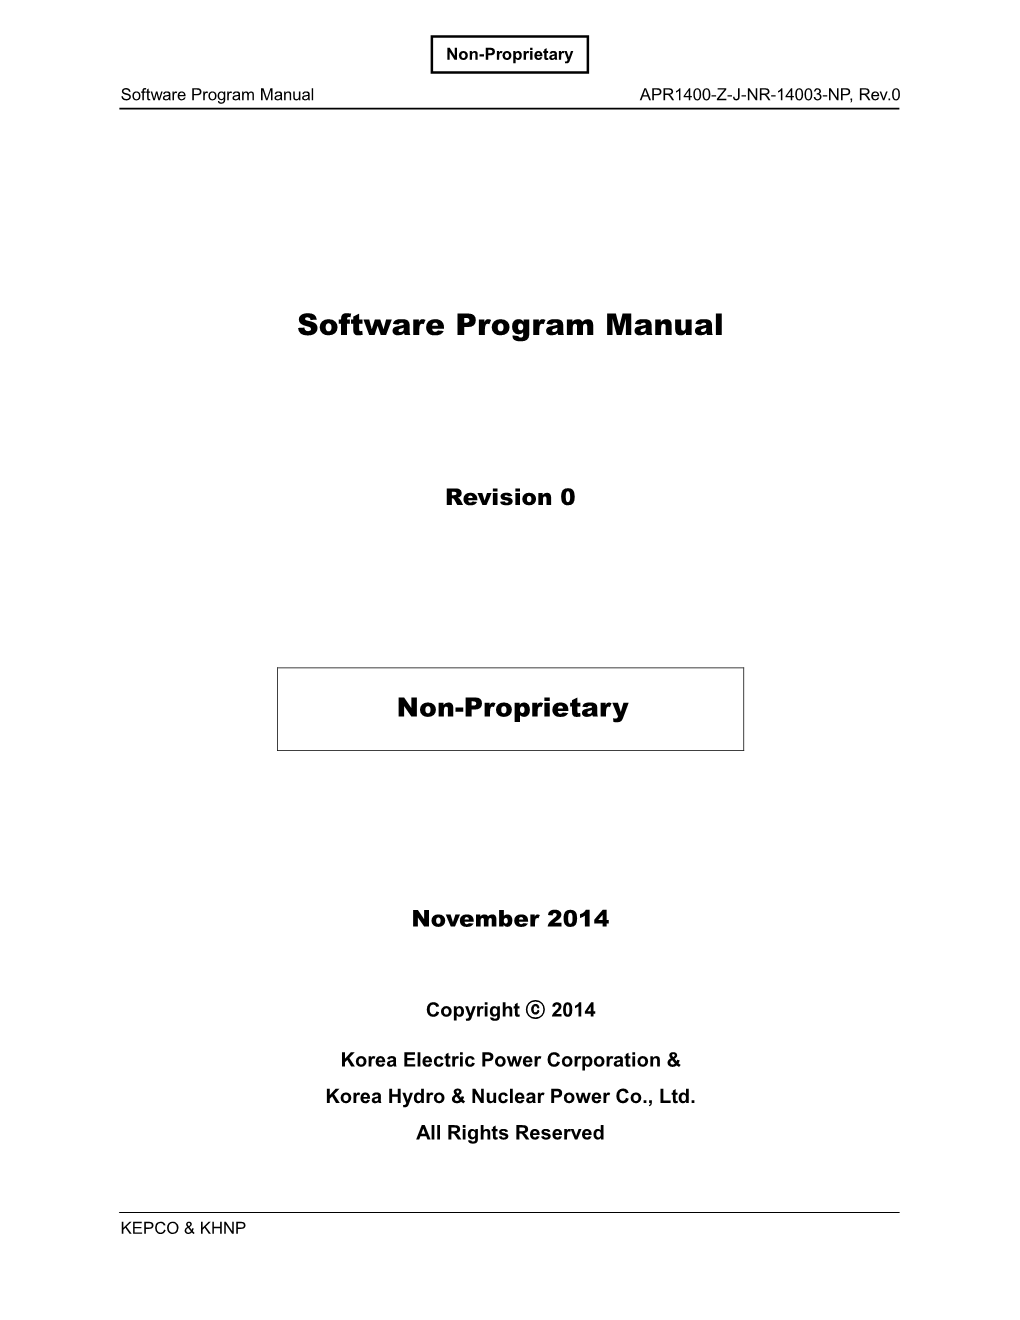 APR1400-Z-J-NR-14003-NP, Rev 0, "Software Program Manual."